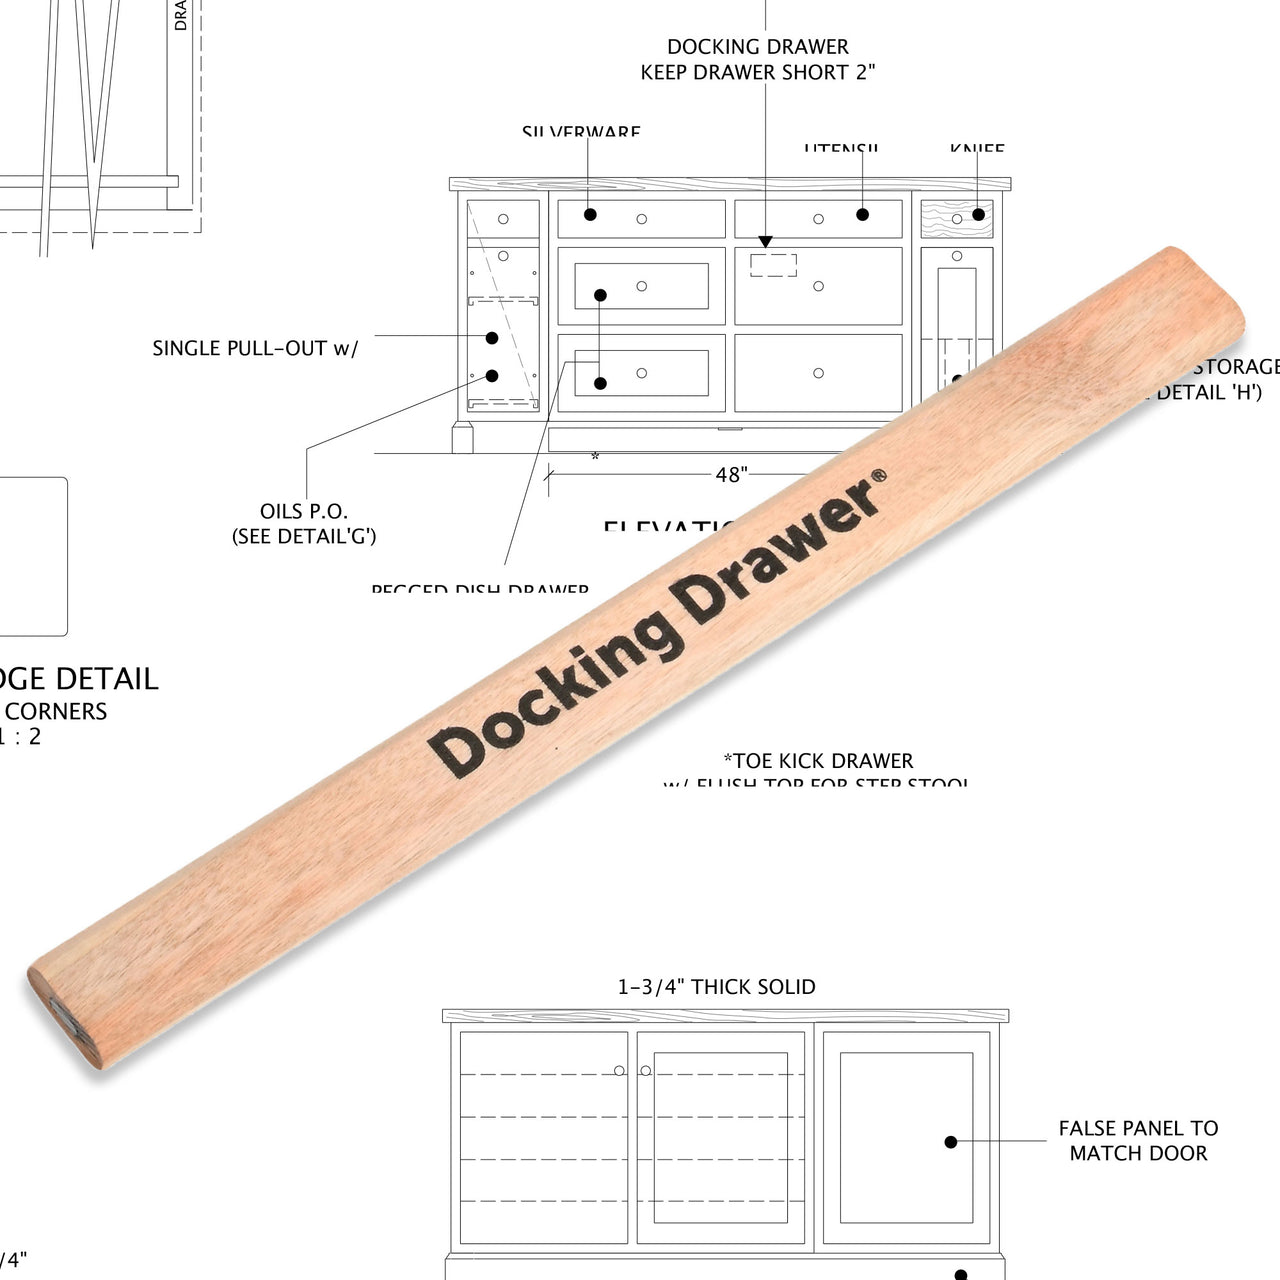 Docking Drawer Wood Carpenters Pencil